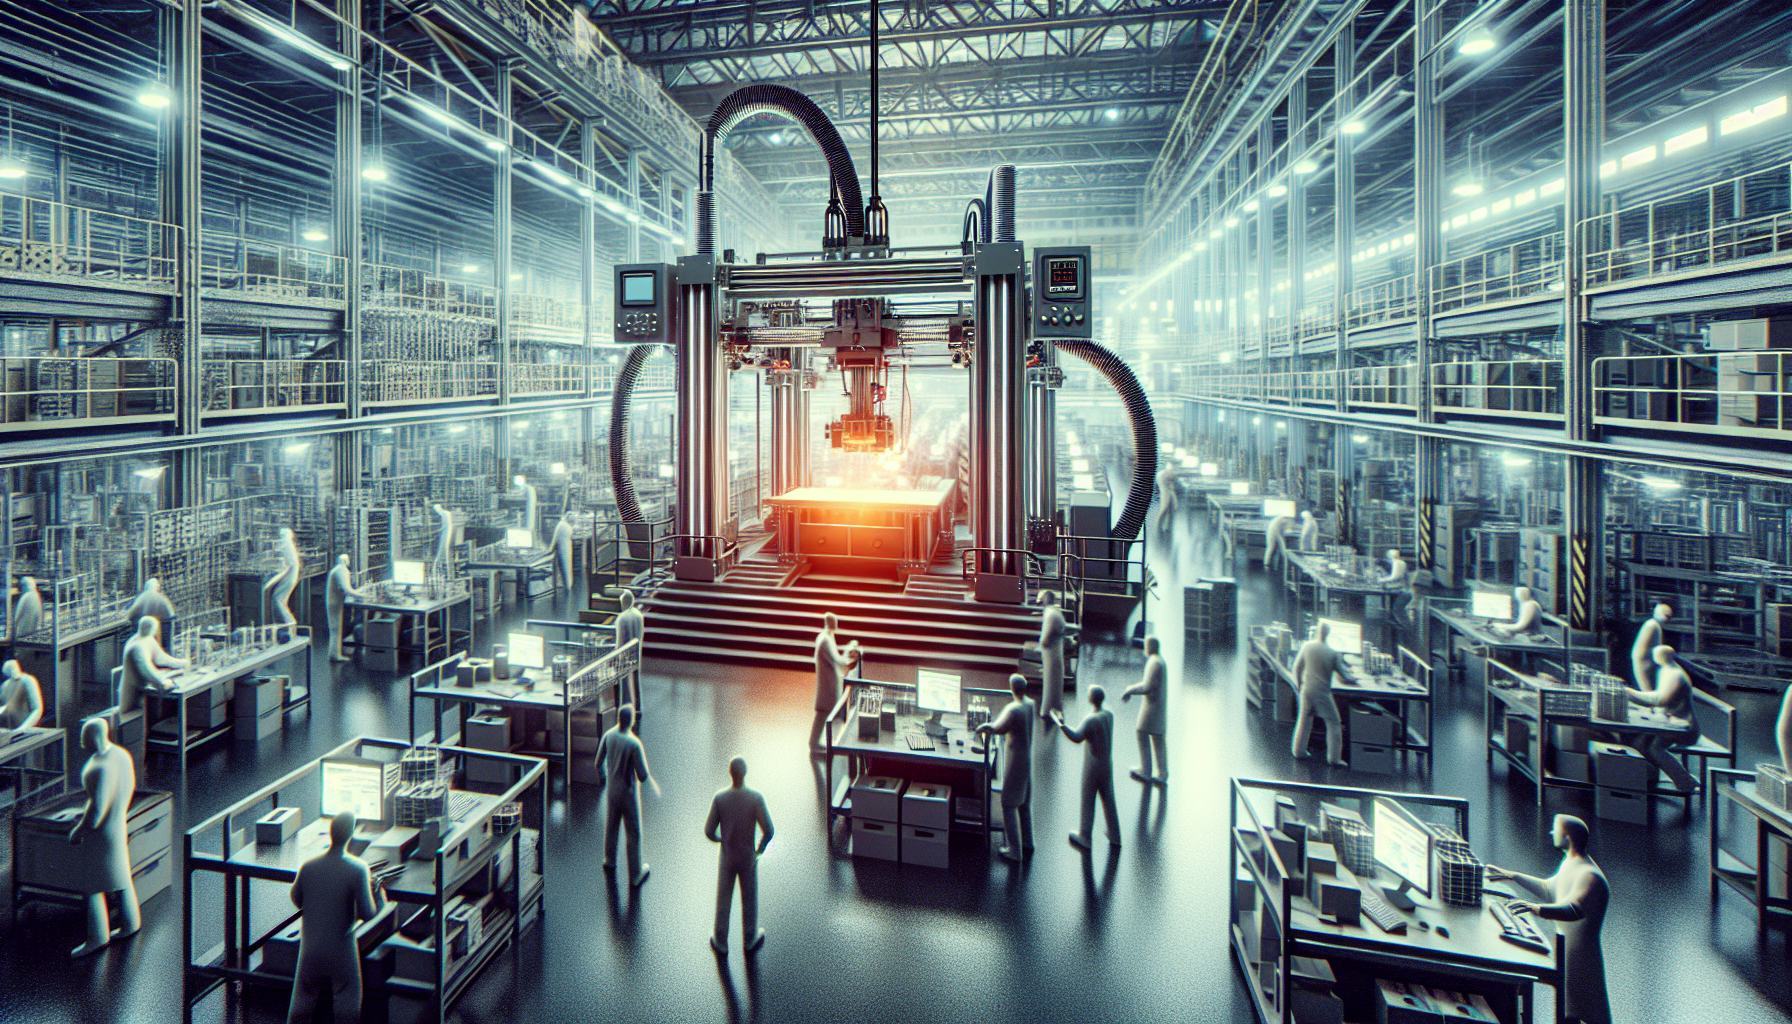 découvrez comment l'imprimante 3d industrielle révolutionne la fabrication et ses implications sur l'industrie grâce à notre analyse approfondie.